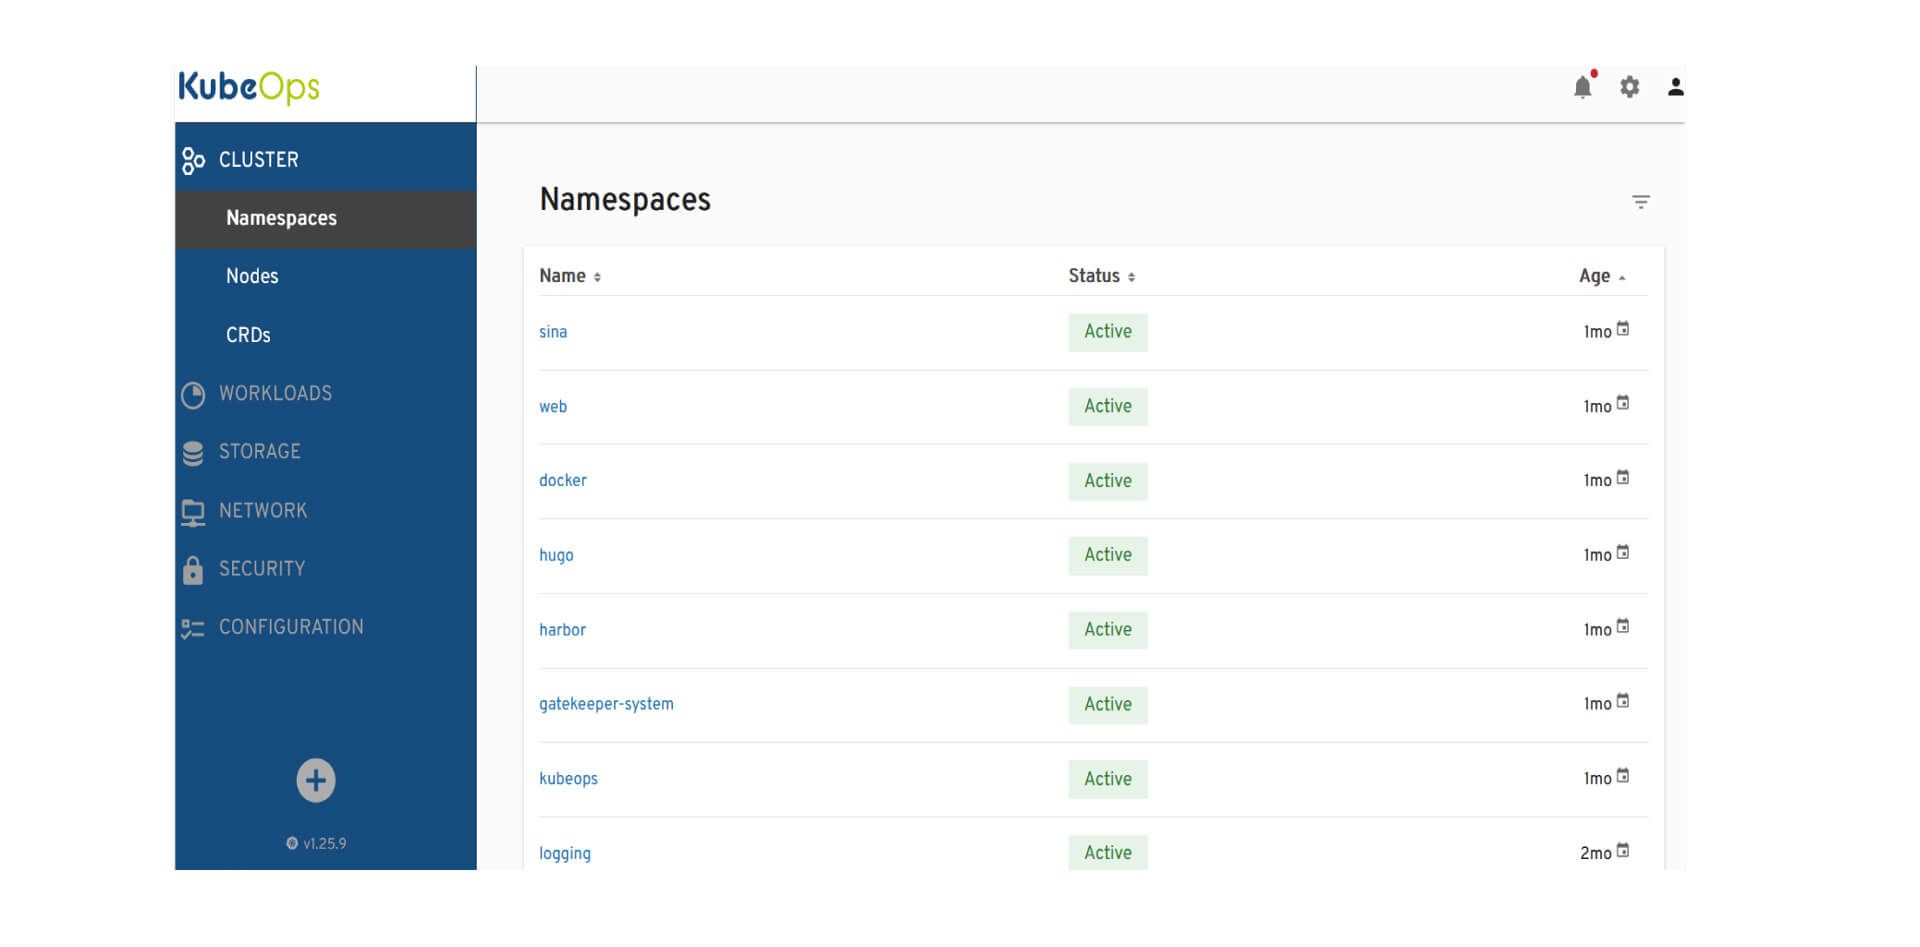 Das Bild zeigt die Benutzeroberfläche des KubeOps-Dashboards, das die Details der Namespaces eines Kubernetes-Clusters anzeigt. Auf der linken Seite befindet sich eine Navigationsleiste mit verschiedenen Menüpunkten wie "Cluster", "Workloads", "Storage", "Network", "Security" und "Configuration". Im Hauptbereich sind die Namespaces mit ihren Namen, dem Status "Active" und ihrem Alter, welches in Monaten angegeben ist, aufgelistet. Alle gezeigten Namespaces, darunter "sina", "web", "docker", "hugo", "harbor", "gatekeeper-system", "kubeops" und "logging" sind aktiv. Das Alter reicht von einem bis zwei Monaten. Das Layout ist sauber und übersichtlich mit einem hellblauen Hintergrund.